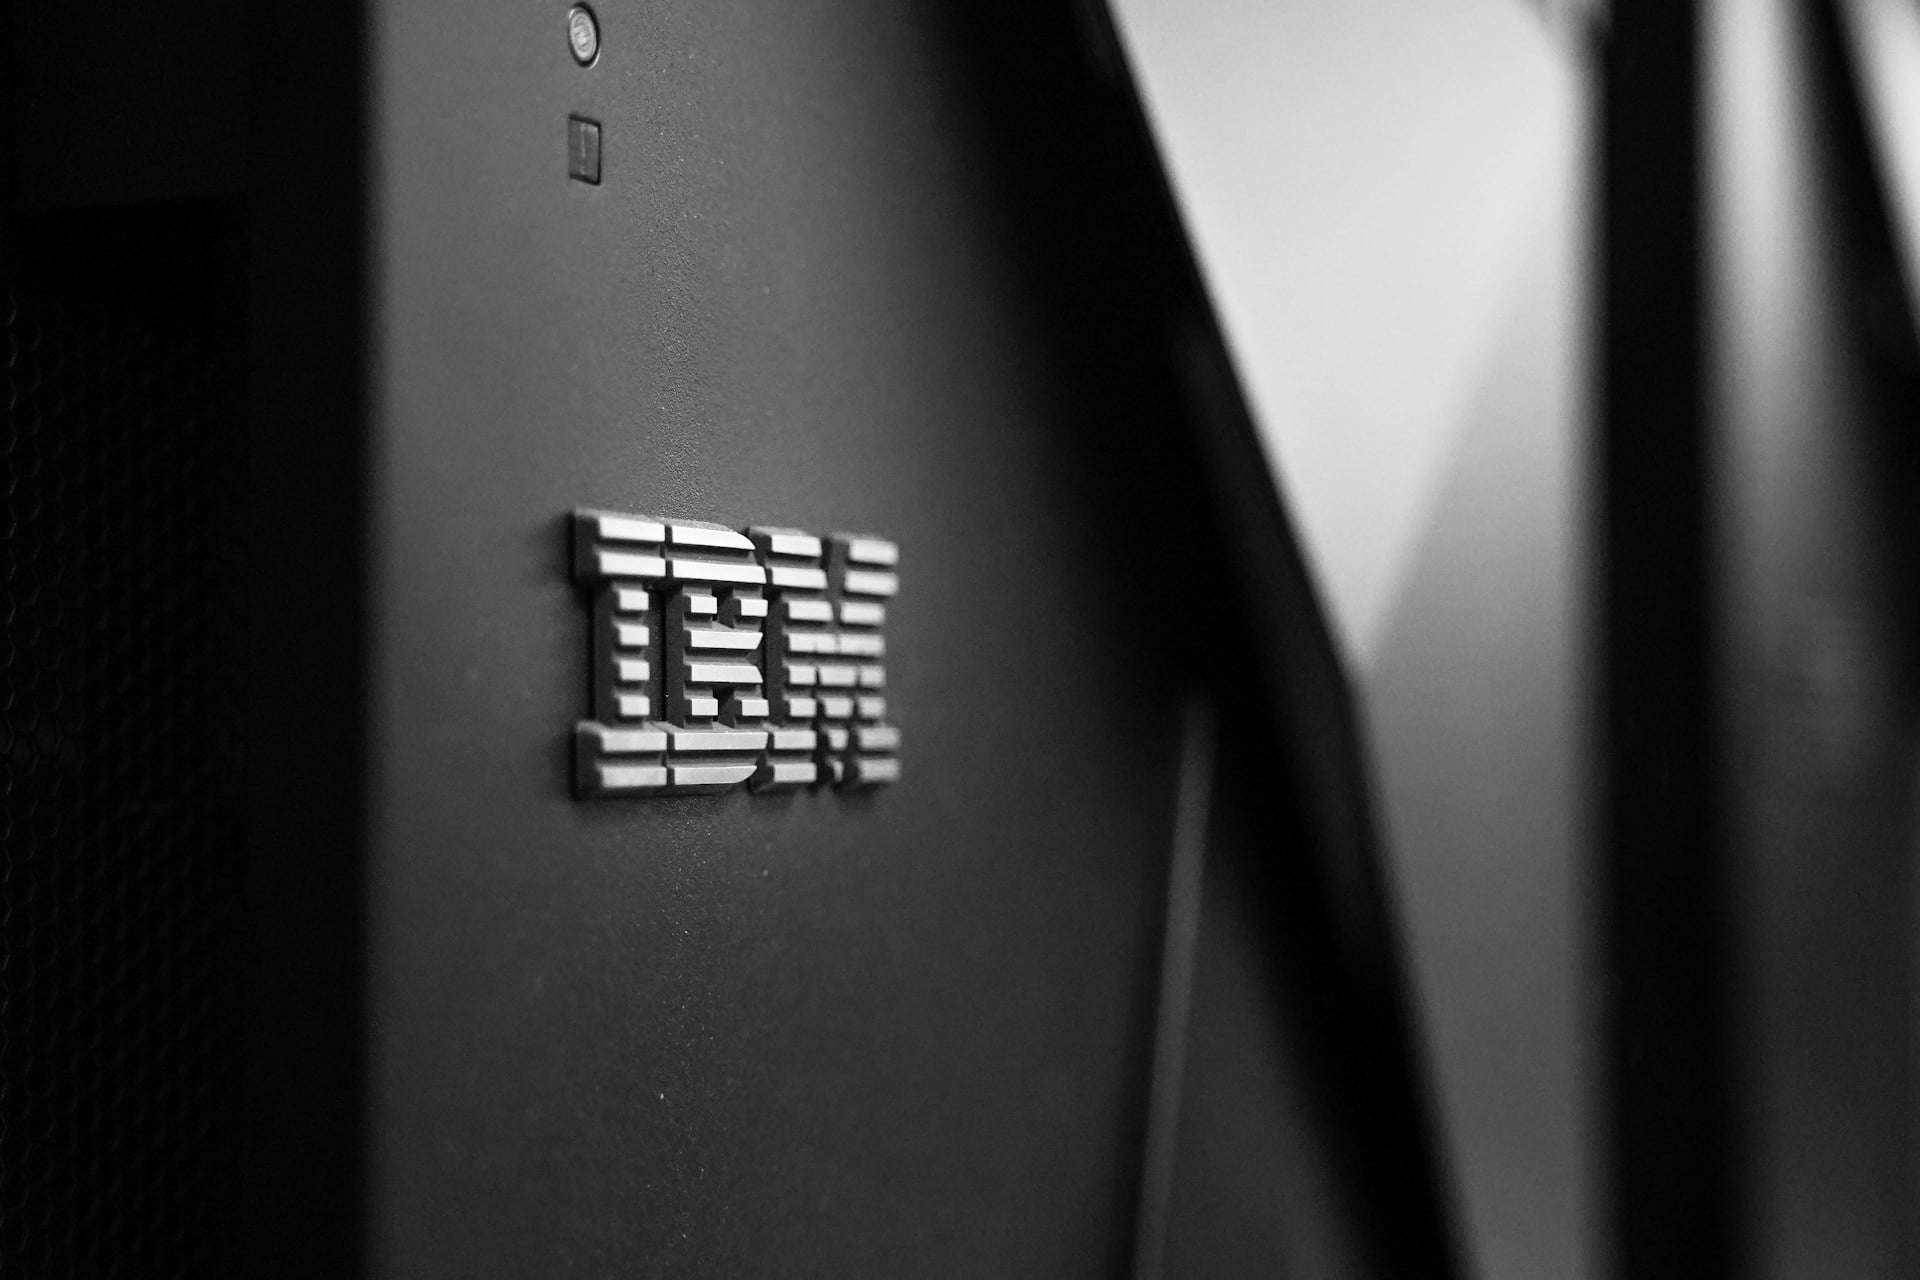 IBM exige retorno presencial de gerentes nos EUA